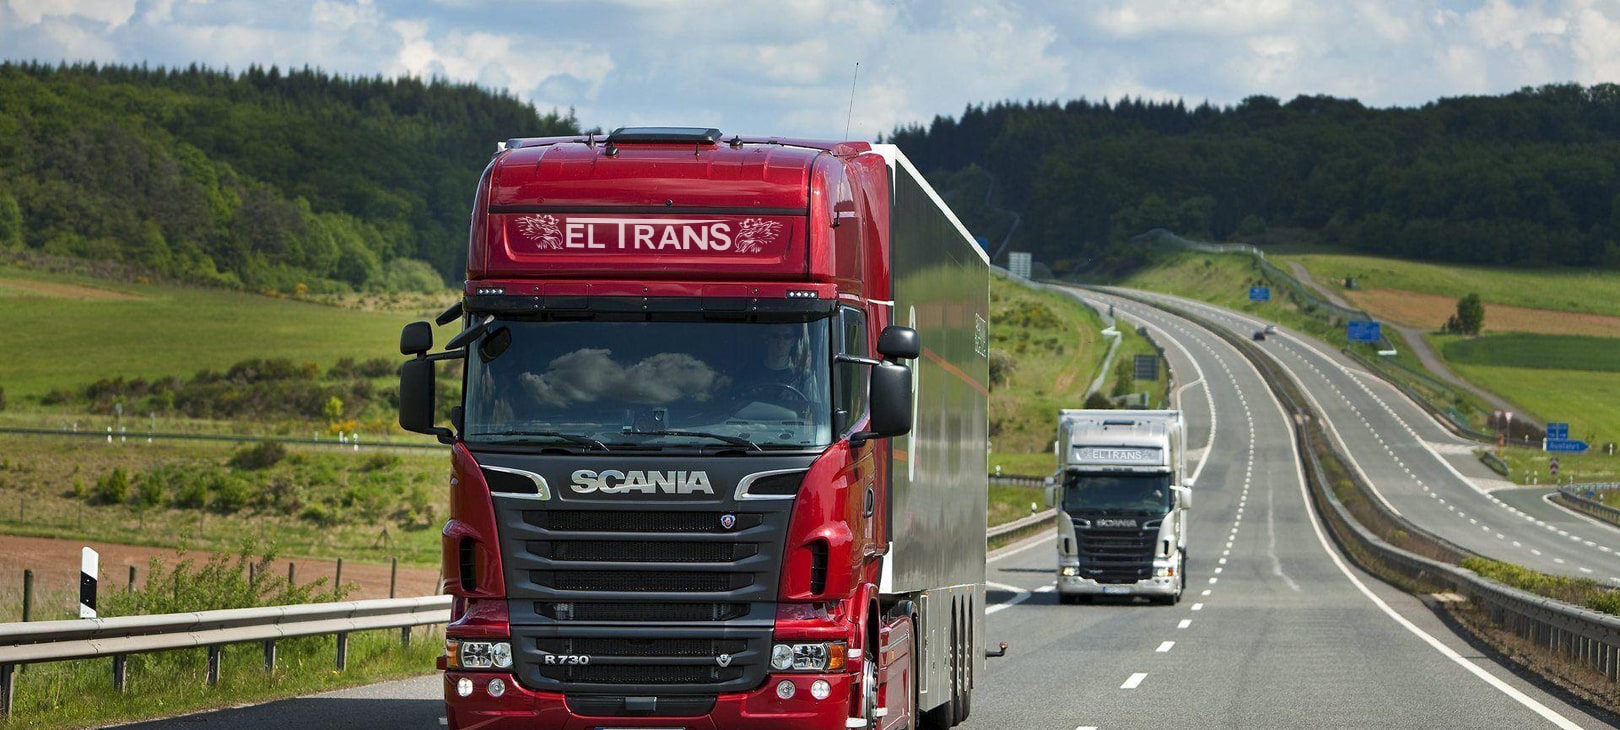 EL TRANS - Kompani Transporti ne Shqiperi. Me 12 vite eksperience ju garanton transport te sigurt mallrash ne Shqiperi dhe ne te gjithe Ballkanin. Transport Nderkombetar Mallrash